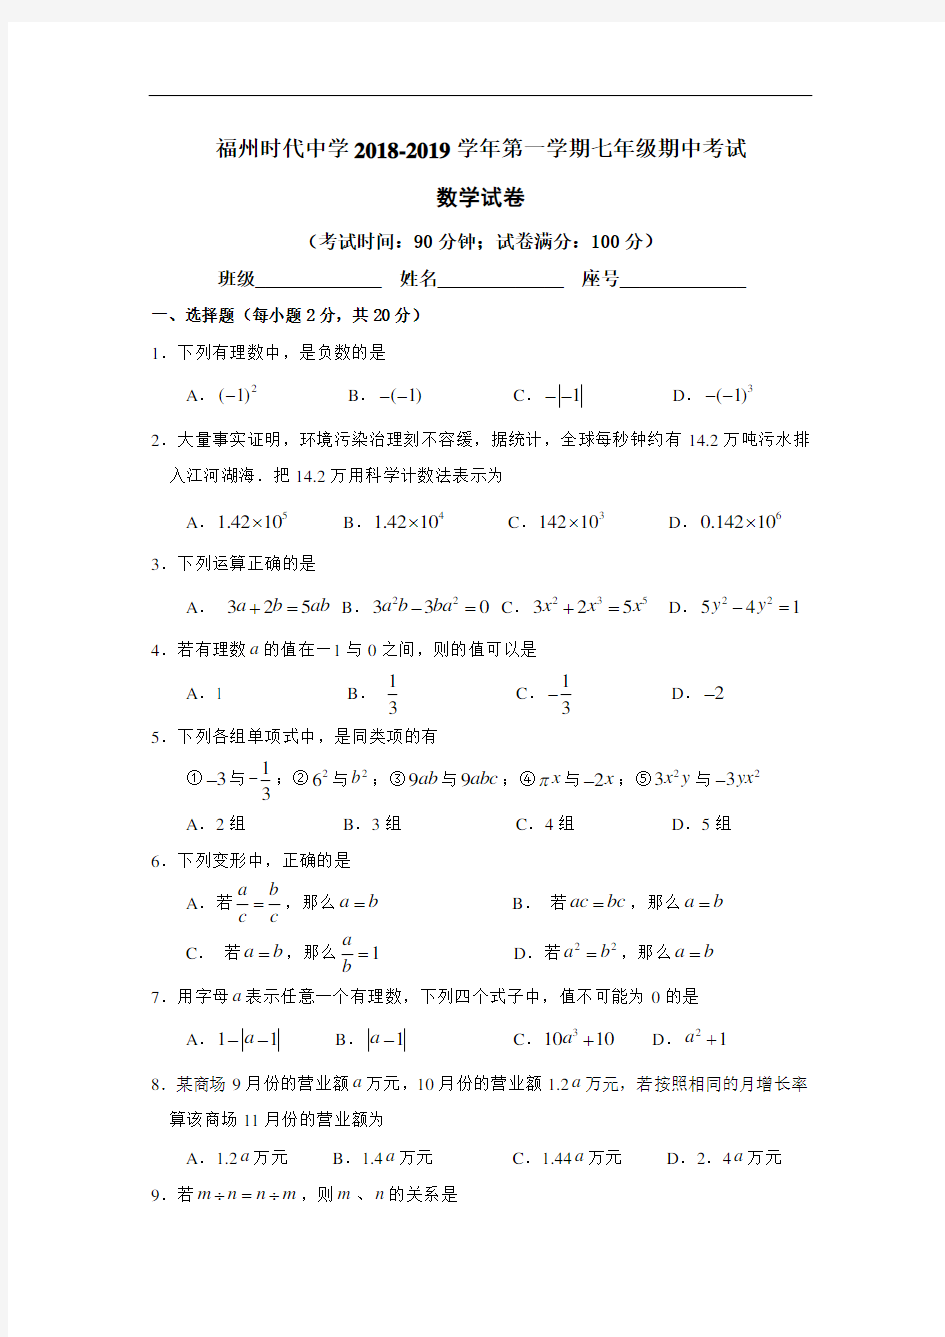 福建省福州时代中学 2018-2019 学年第一学期七年级期中考试卷数学试卷